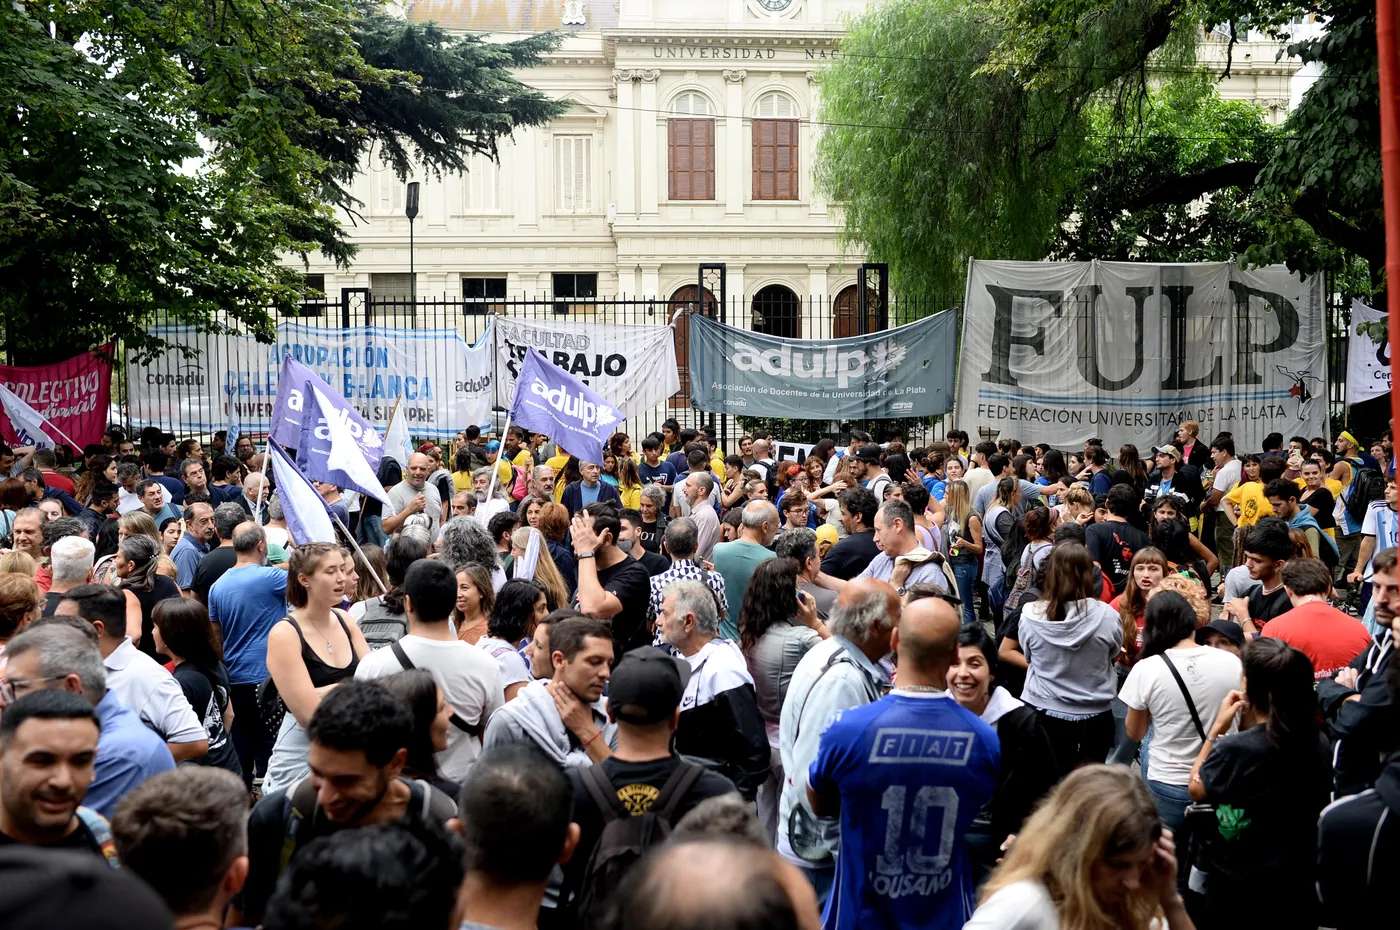 Marcha Federal Universitaria: Los detalles de la movilización en La Plata